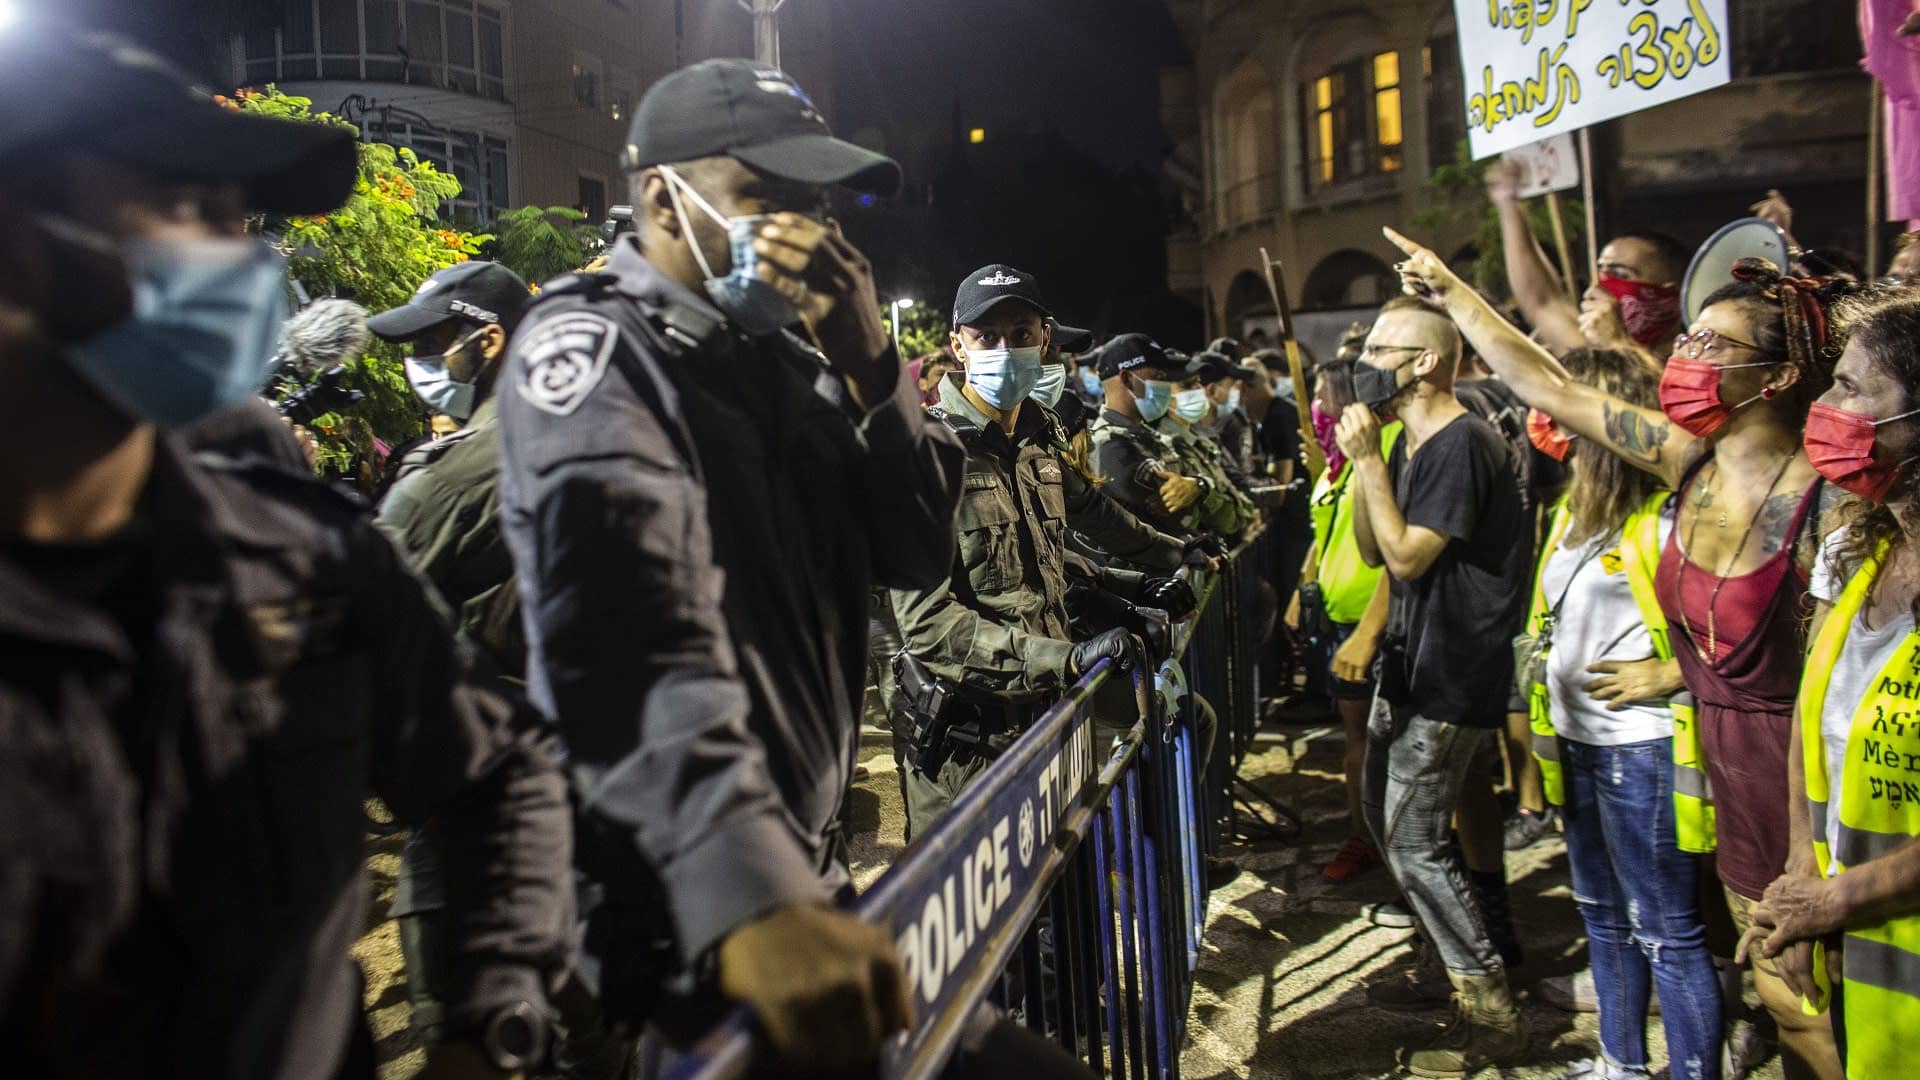 Mielenosoittajia aidan toisella puolen, toisella puolella on poliiseja.